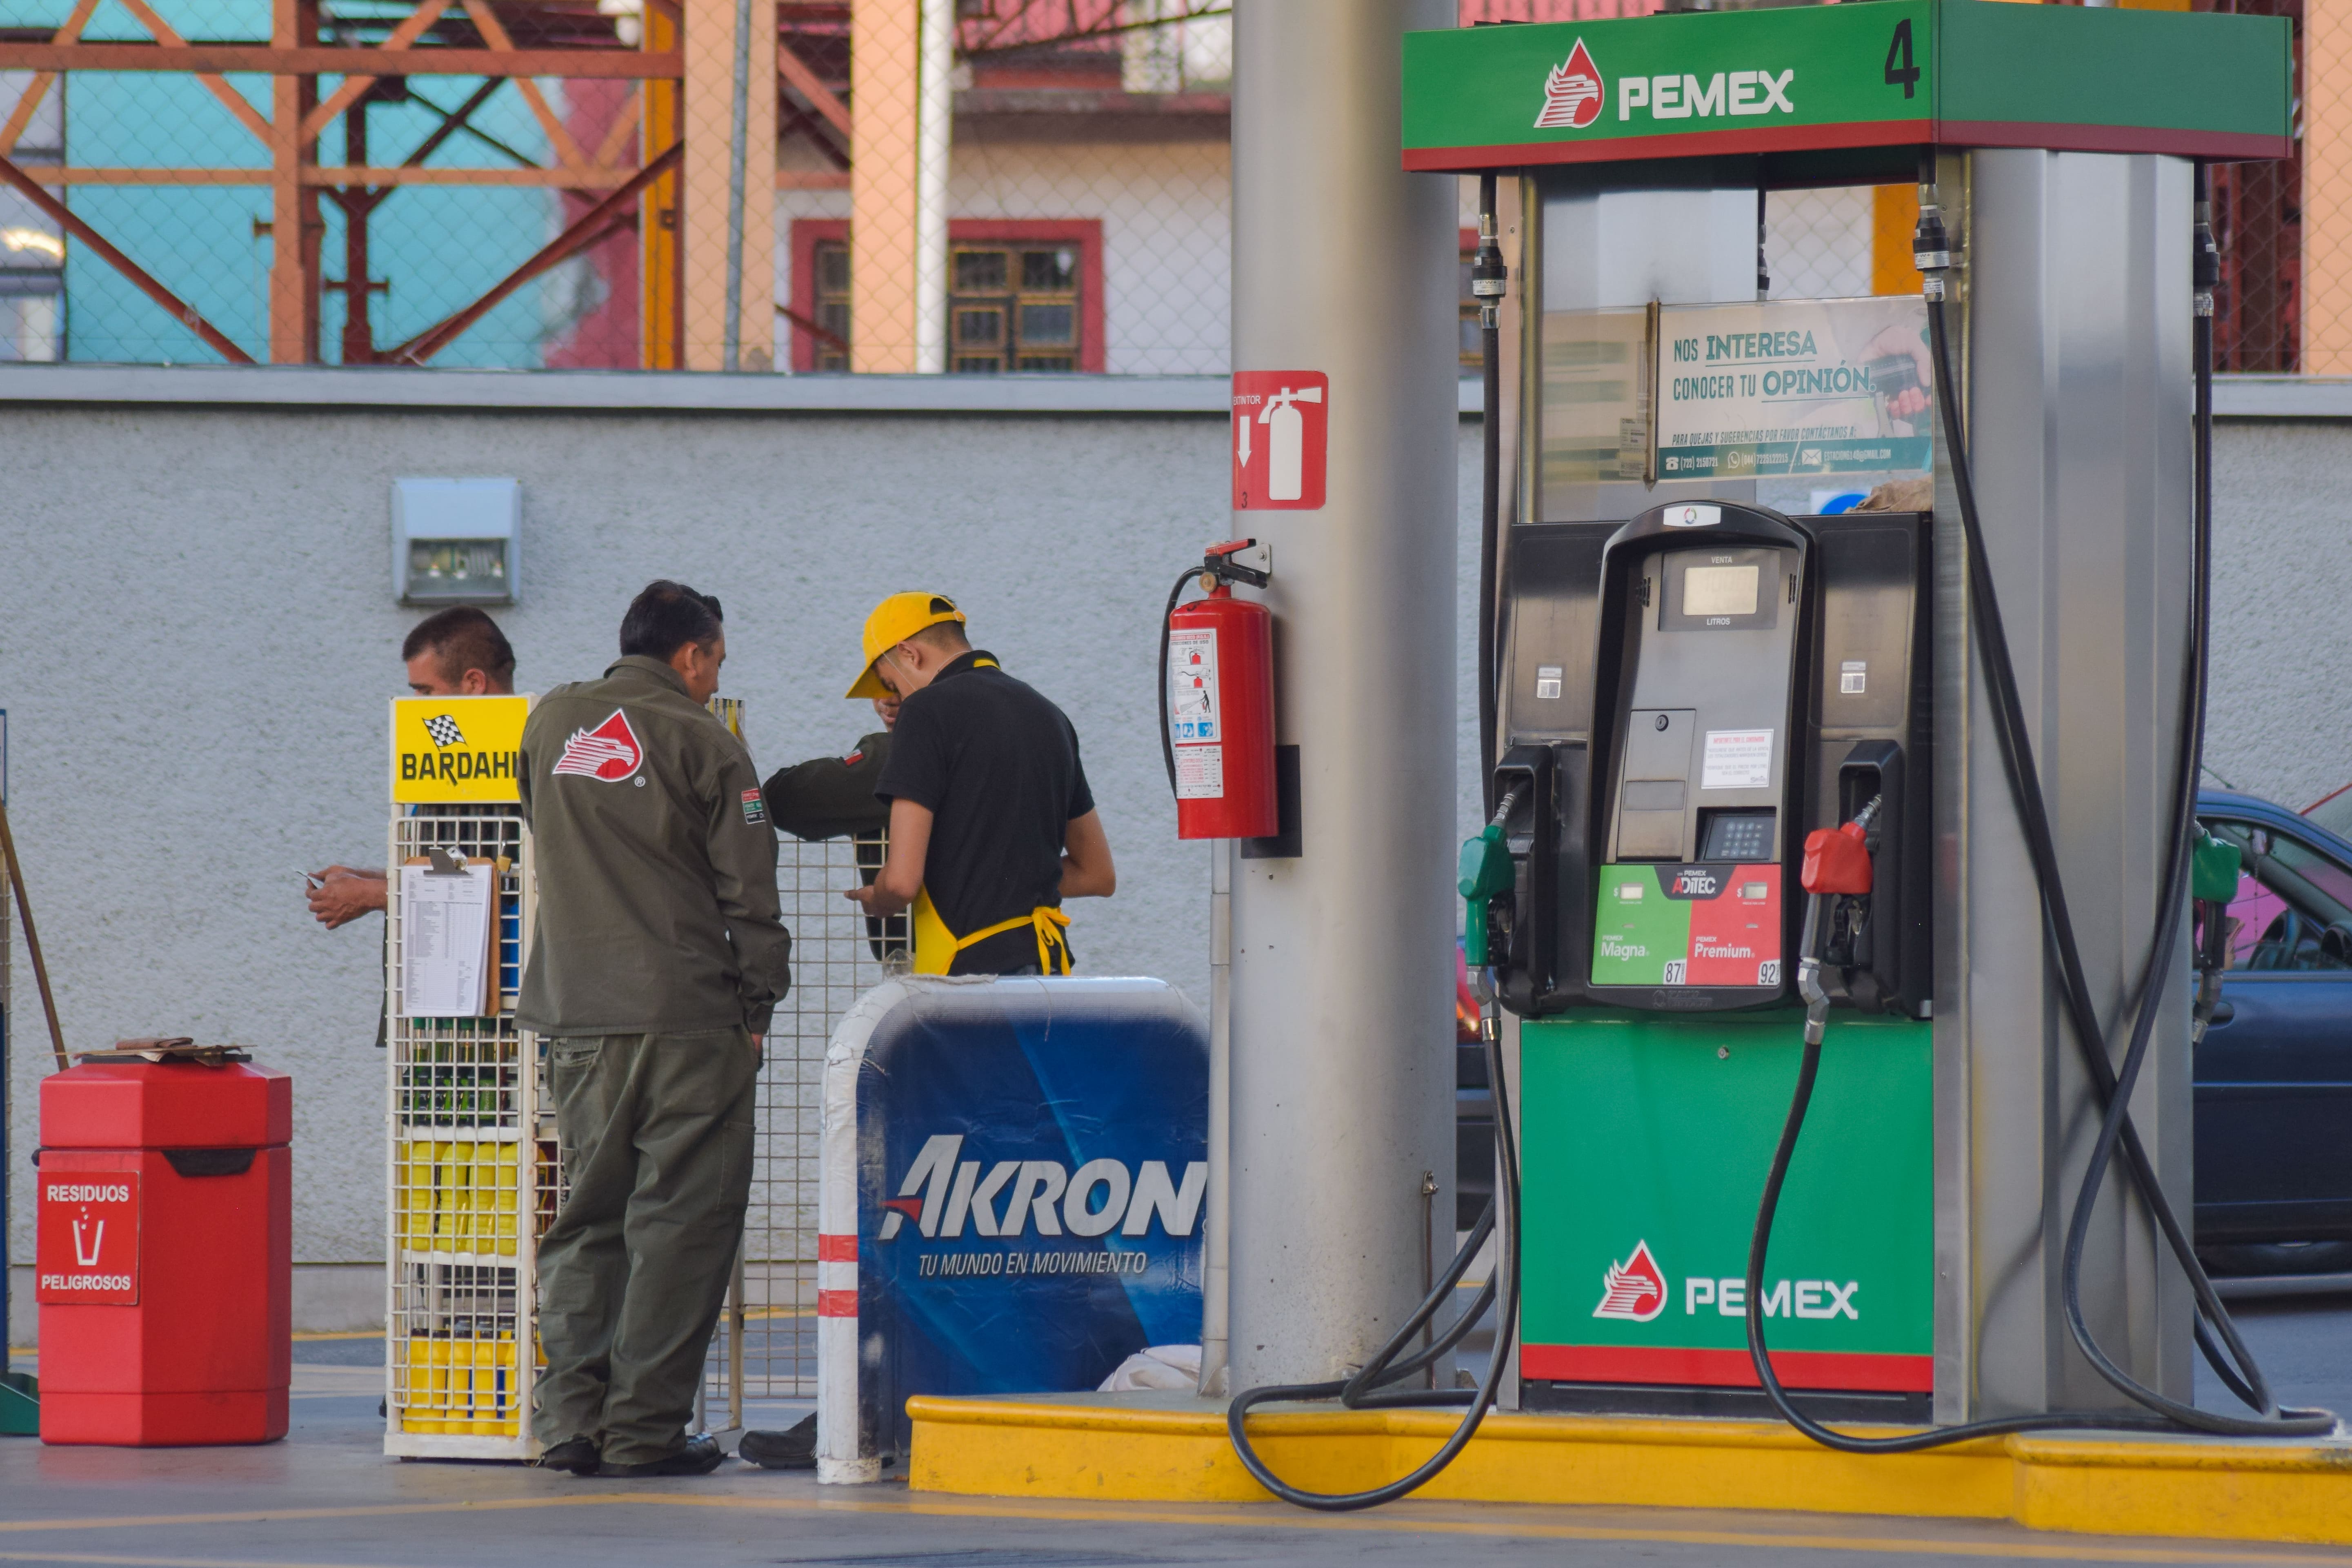 La gasolina más barata de todo Toluca y Metepec